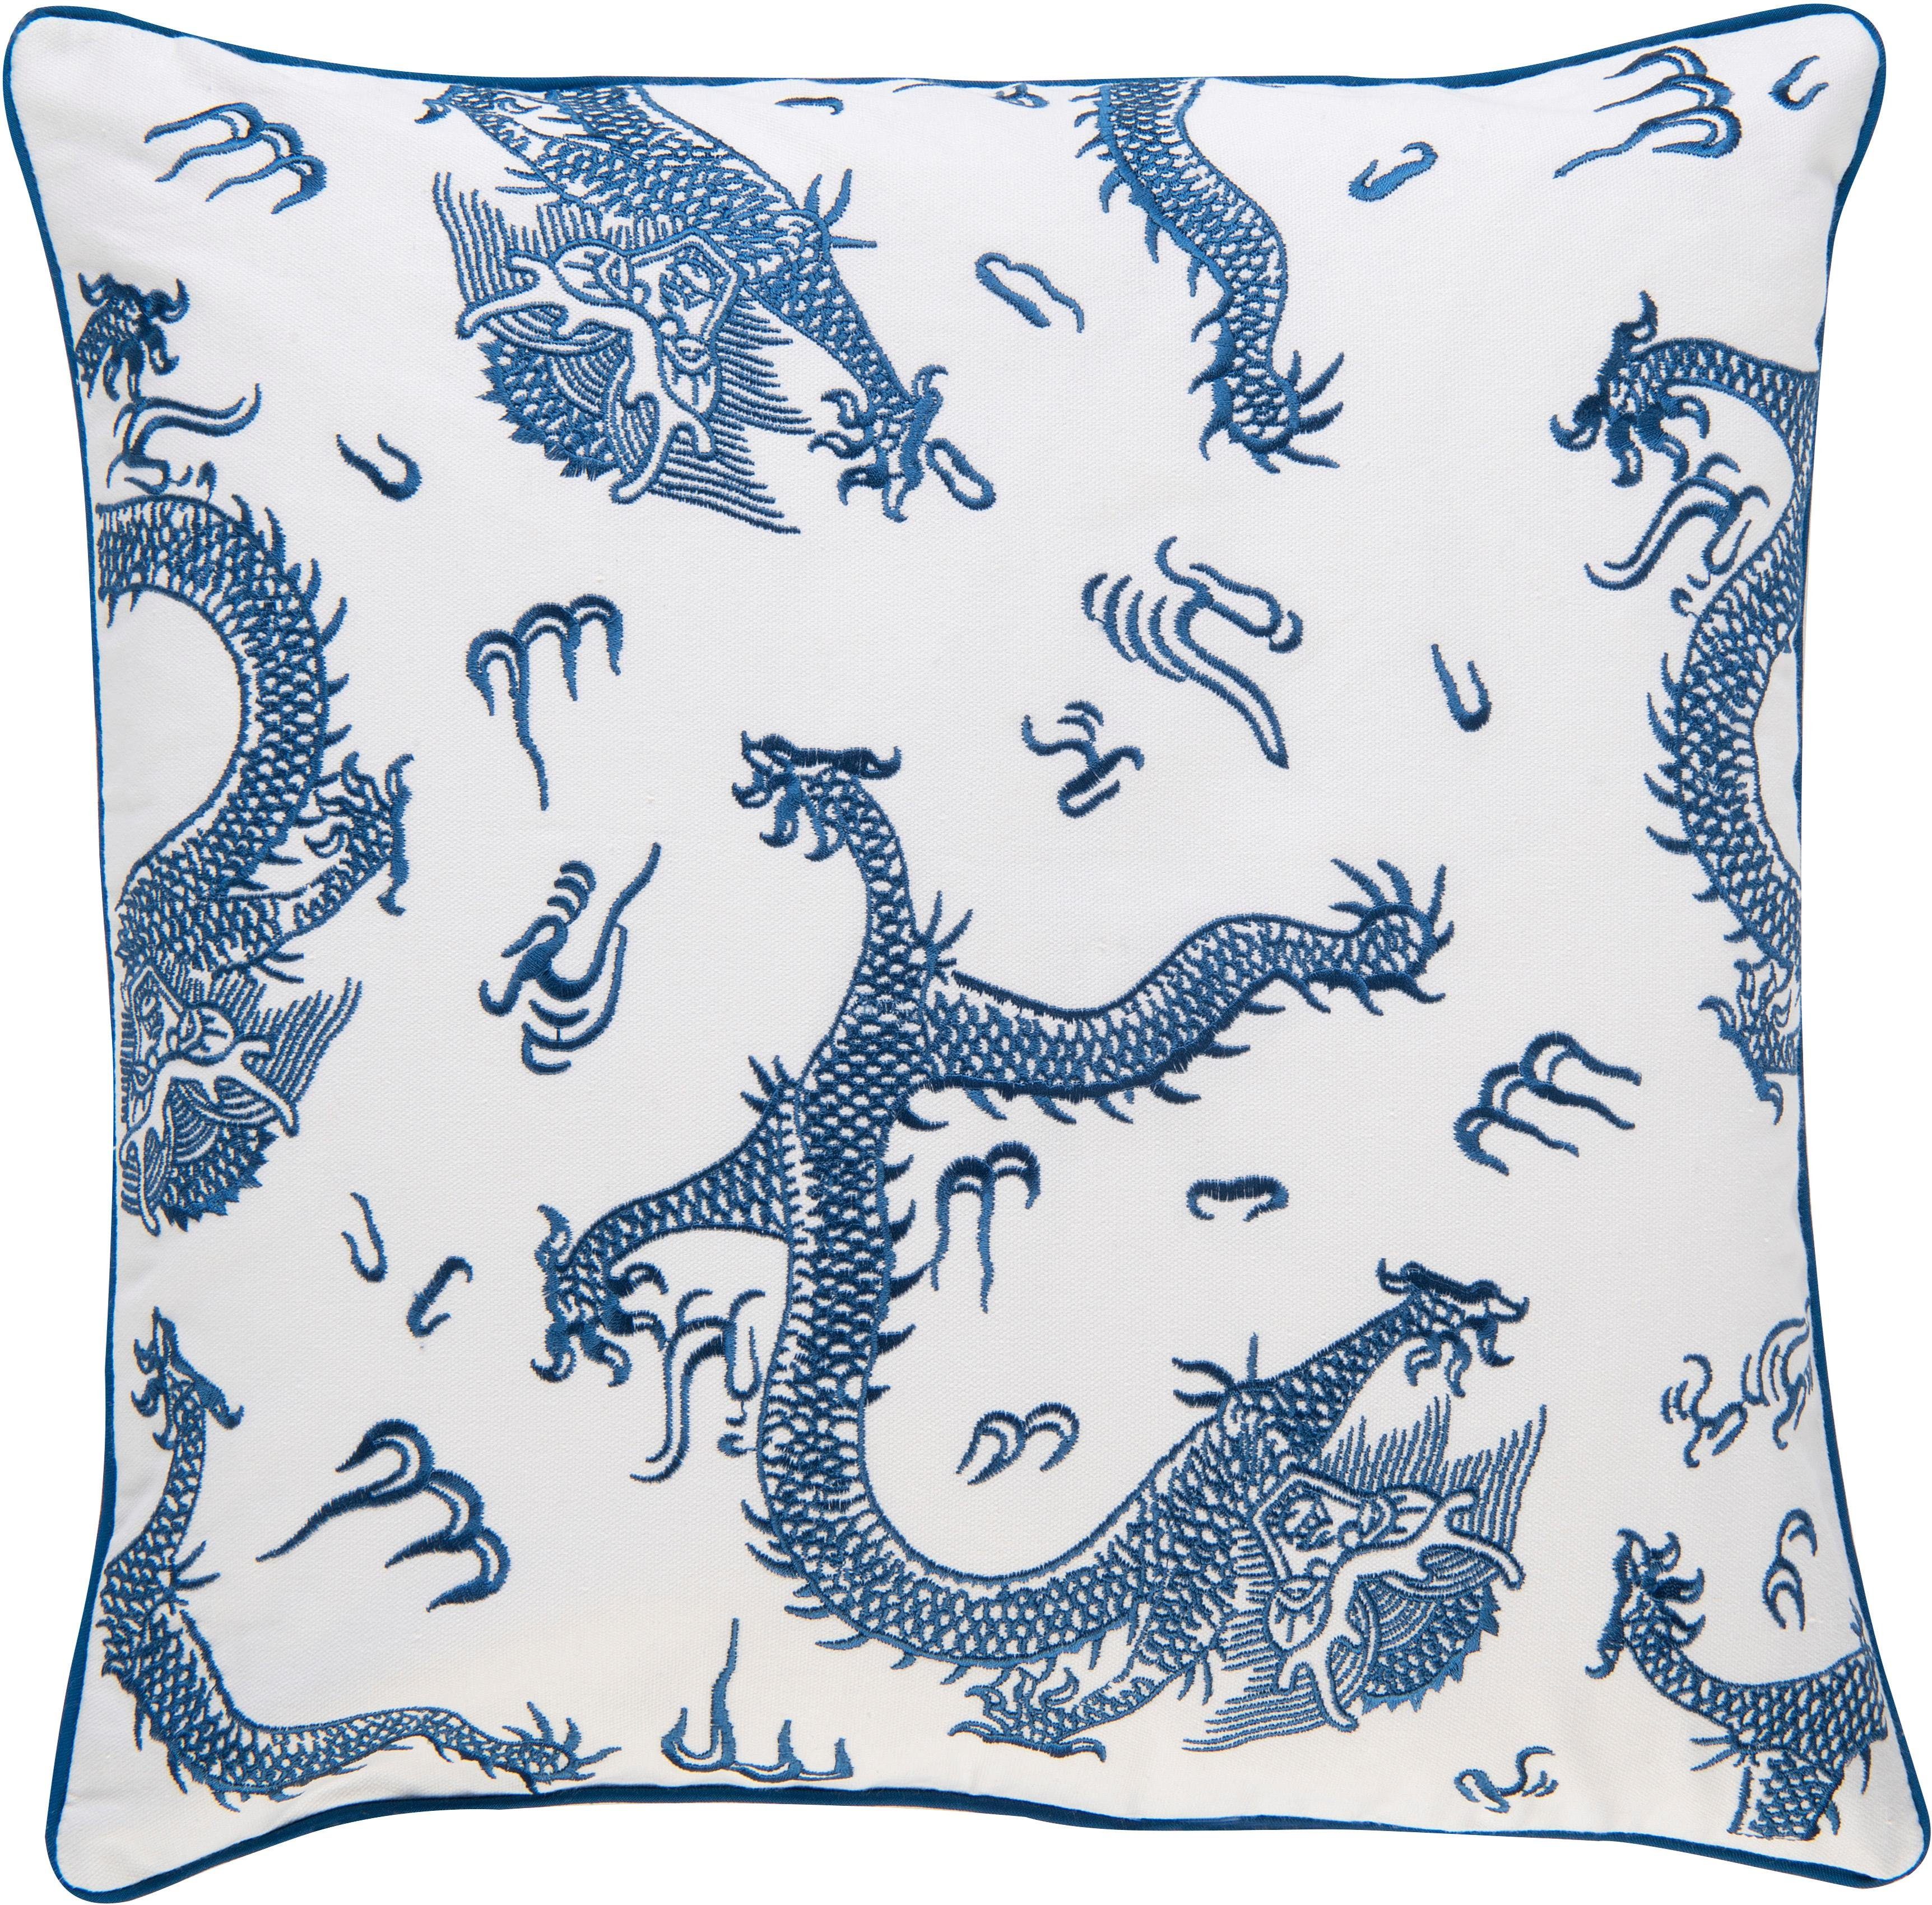 Home besticktem Leinwandgewebe, Dragon Dekokissen Kissenhülle BARBARA ohne aus cm 50x50 Collection 01 blau-weiß, Füllung